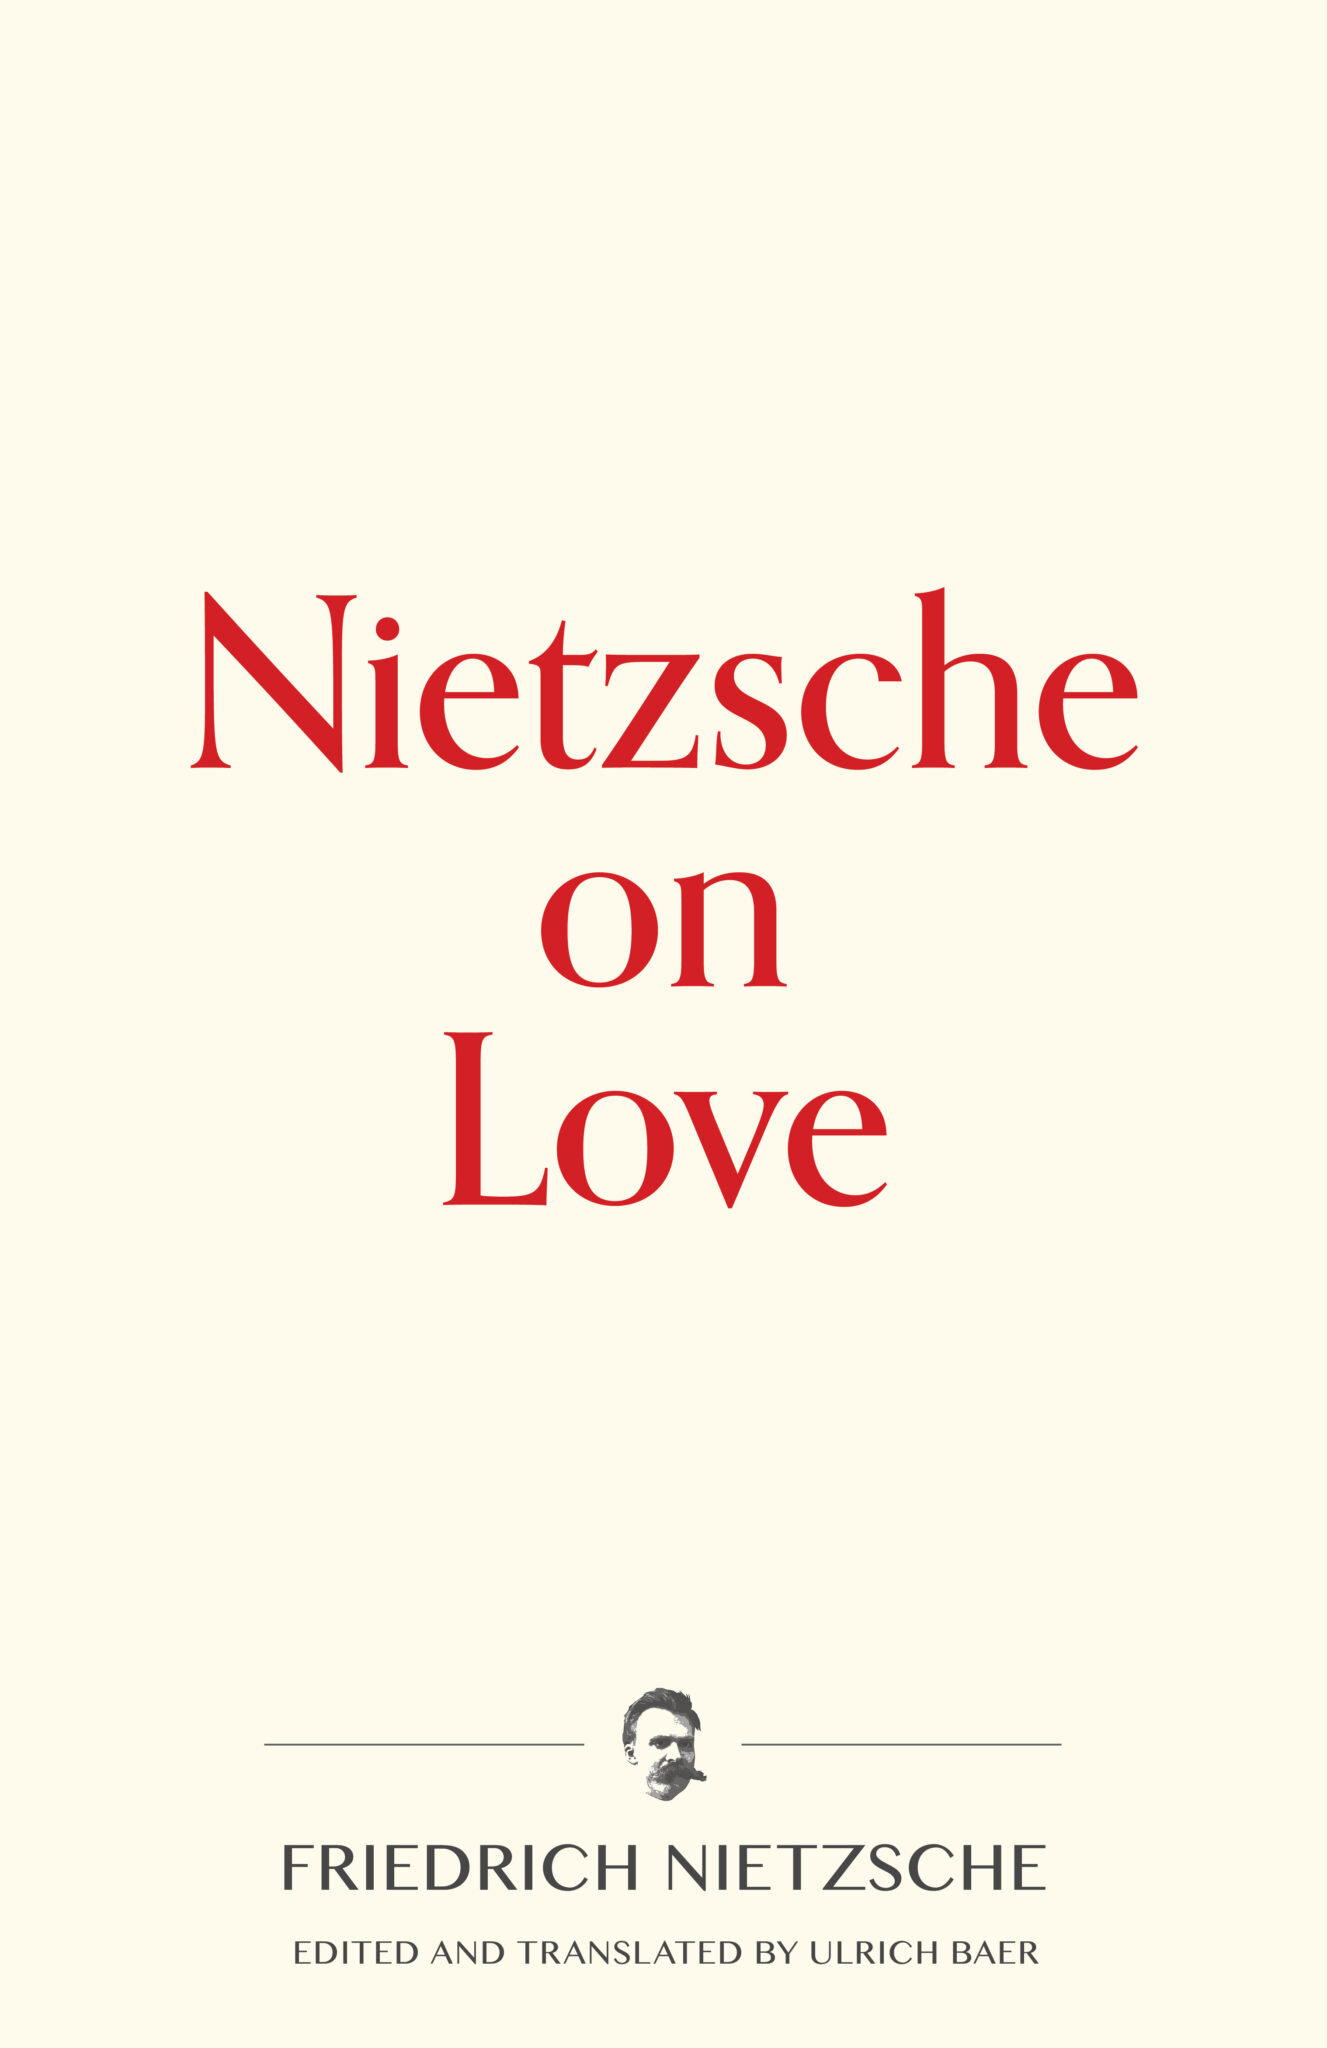 Nietzsche-on-Love-cover-half-rev-1.0-1327x2048.jpg